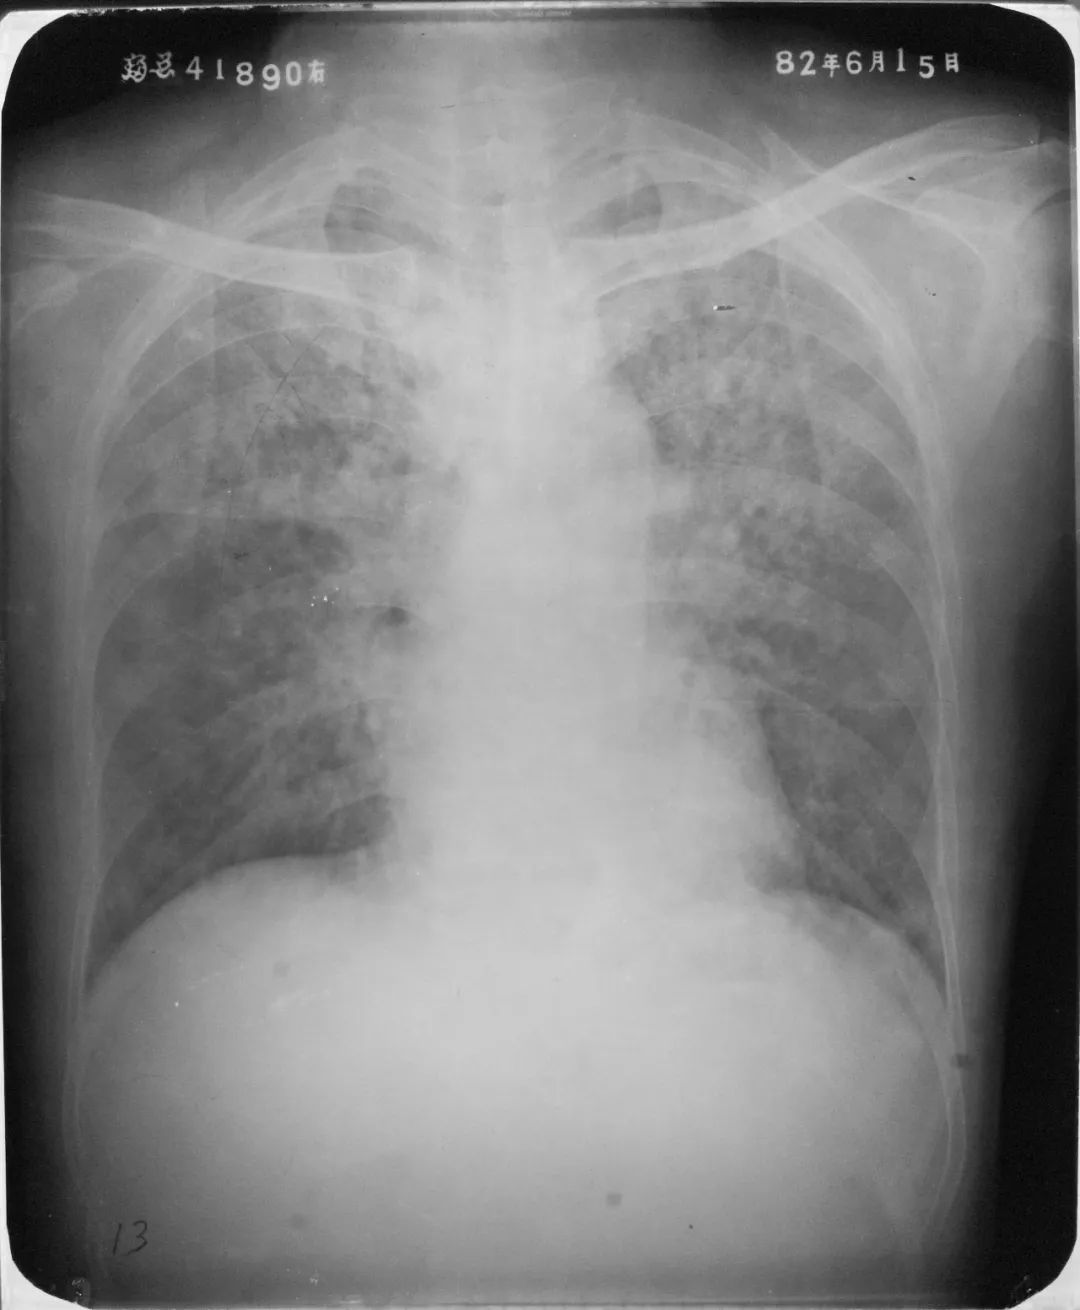 胸部 X 线检查显示肺淤血